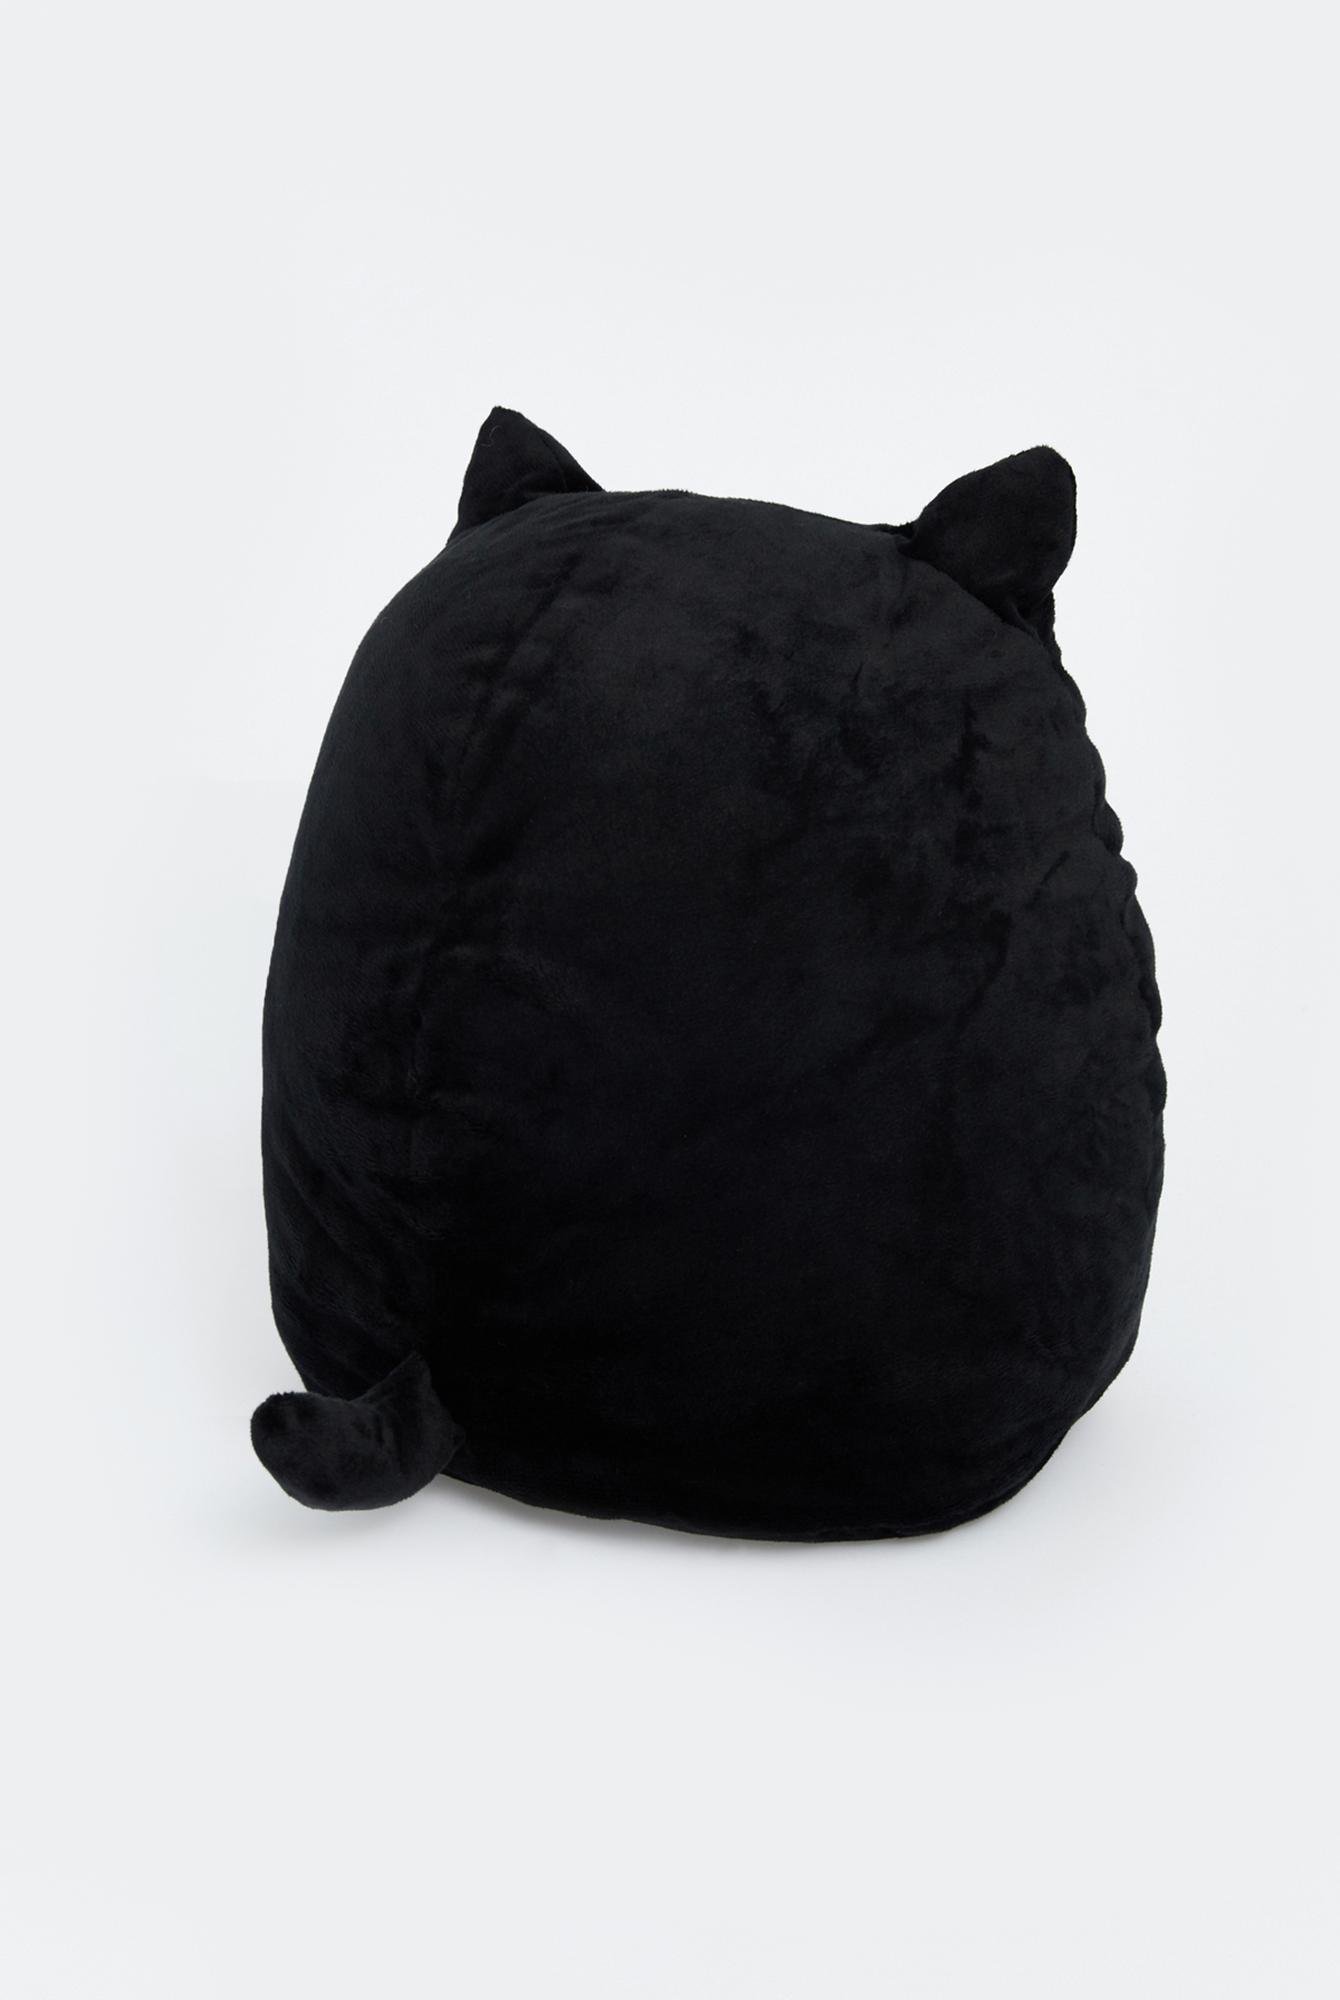  Ecrou Kara Kedi Dekoratif Pelüş Yastık 35 cm Siyah